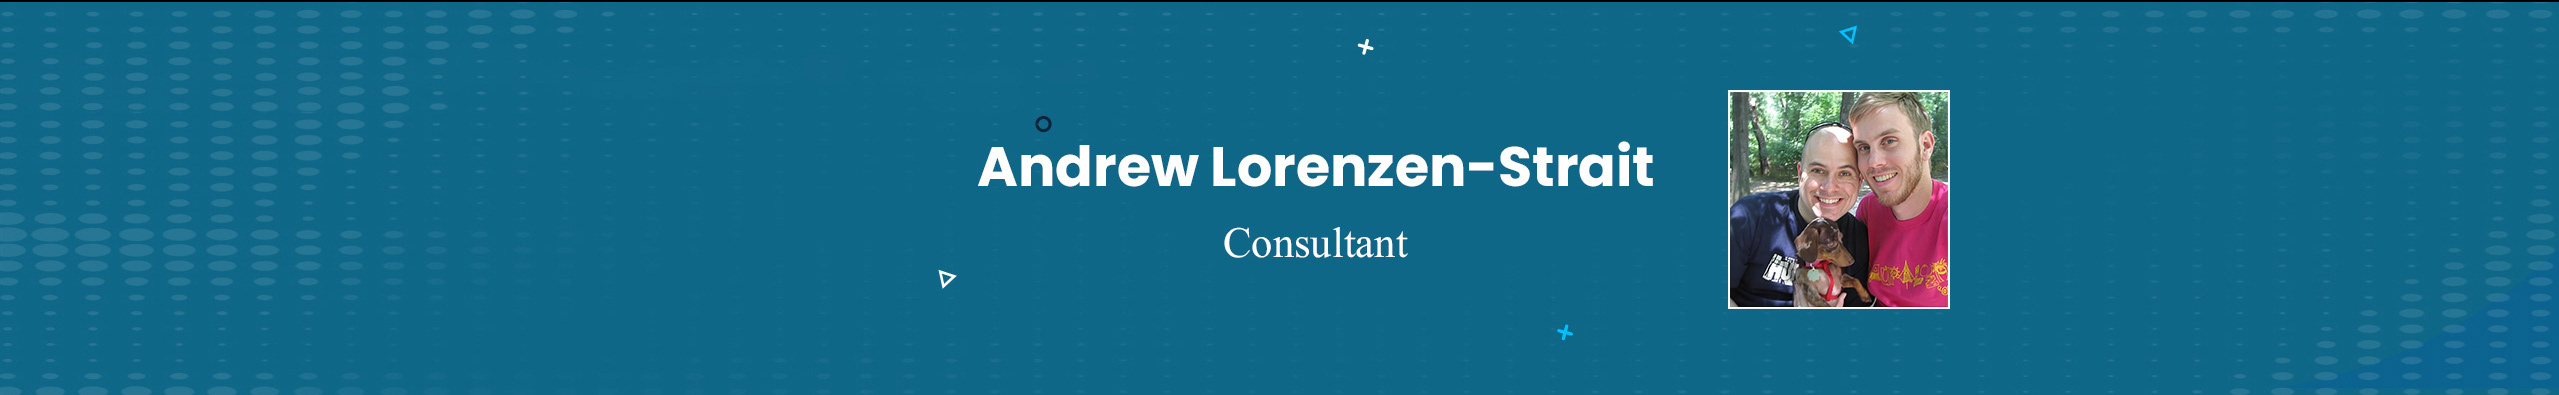 Баннер профиля Andrew Lorenzen-Strait